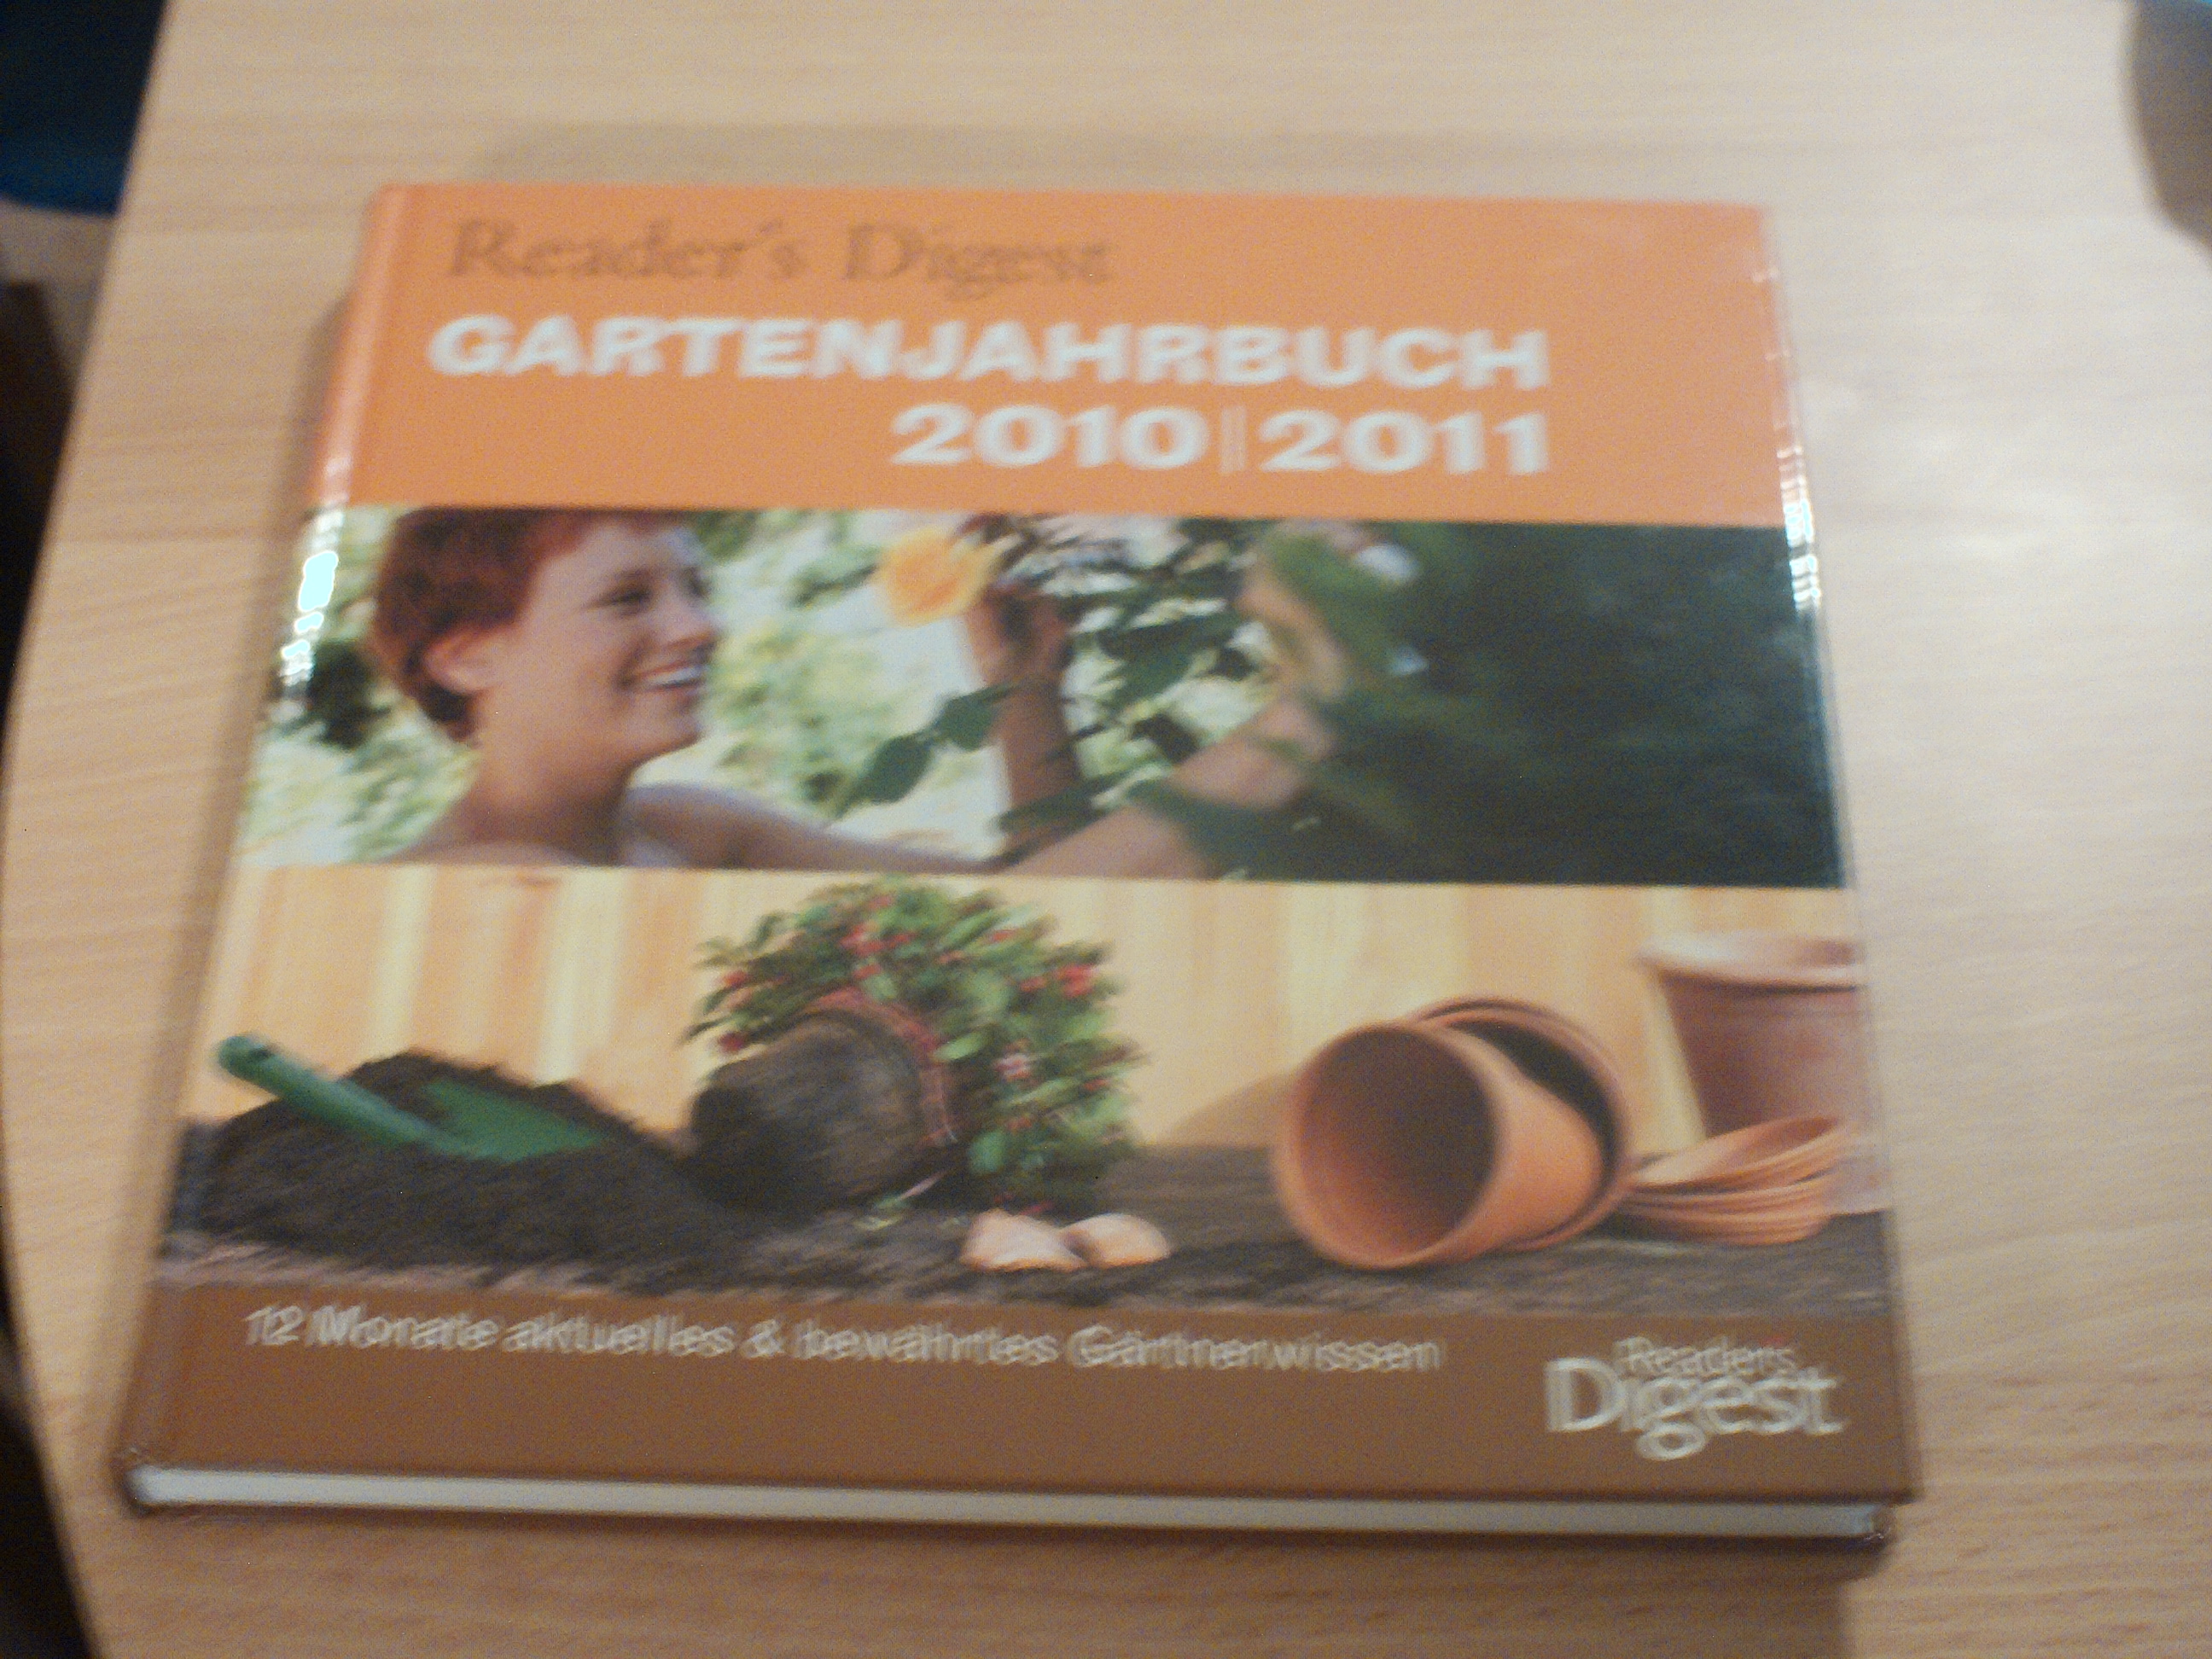 Reader's Digest Garten-Jahrbuch 2010/2011 12 Monate aktuelles & bewaehrtes GaertnerwissenFeryal Kanbay